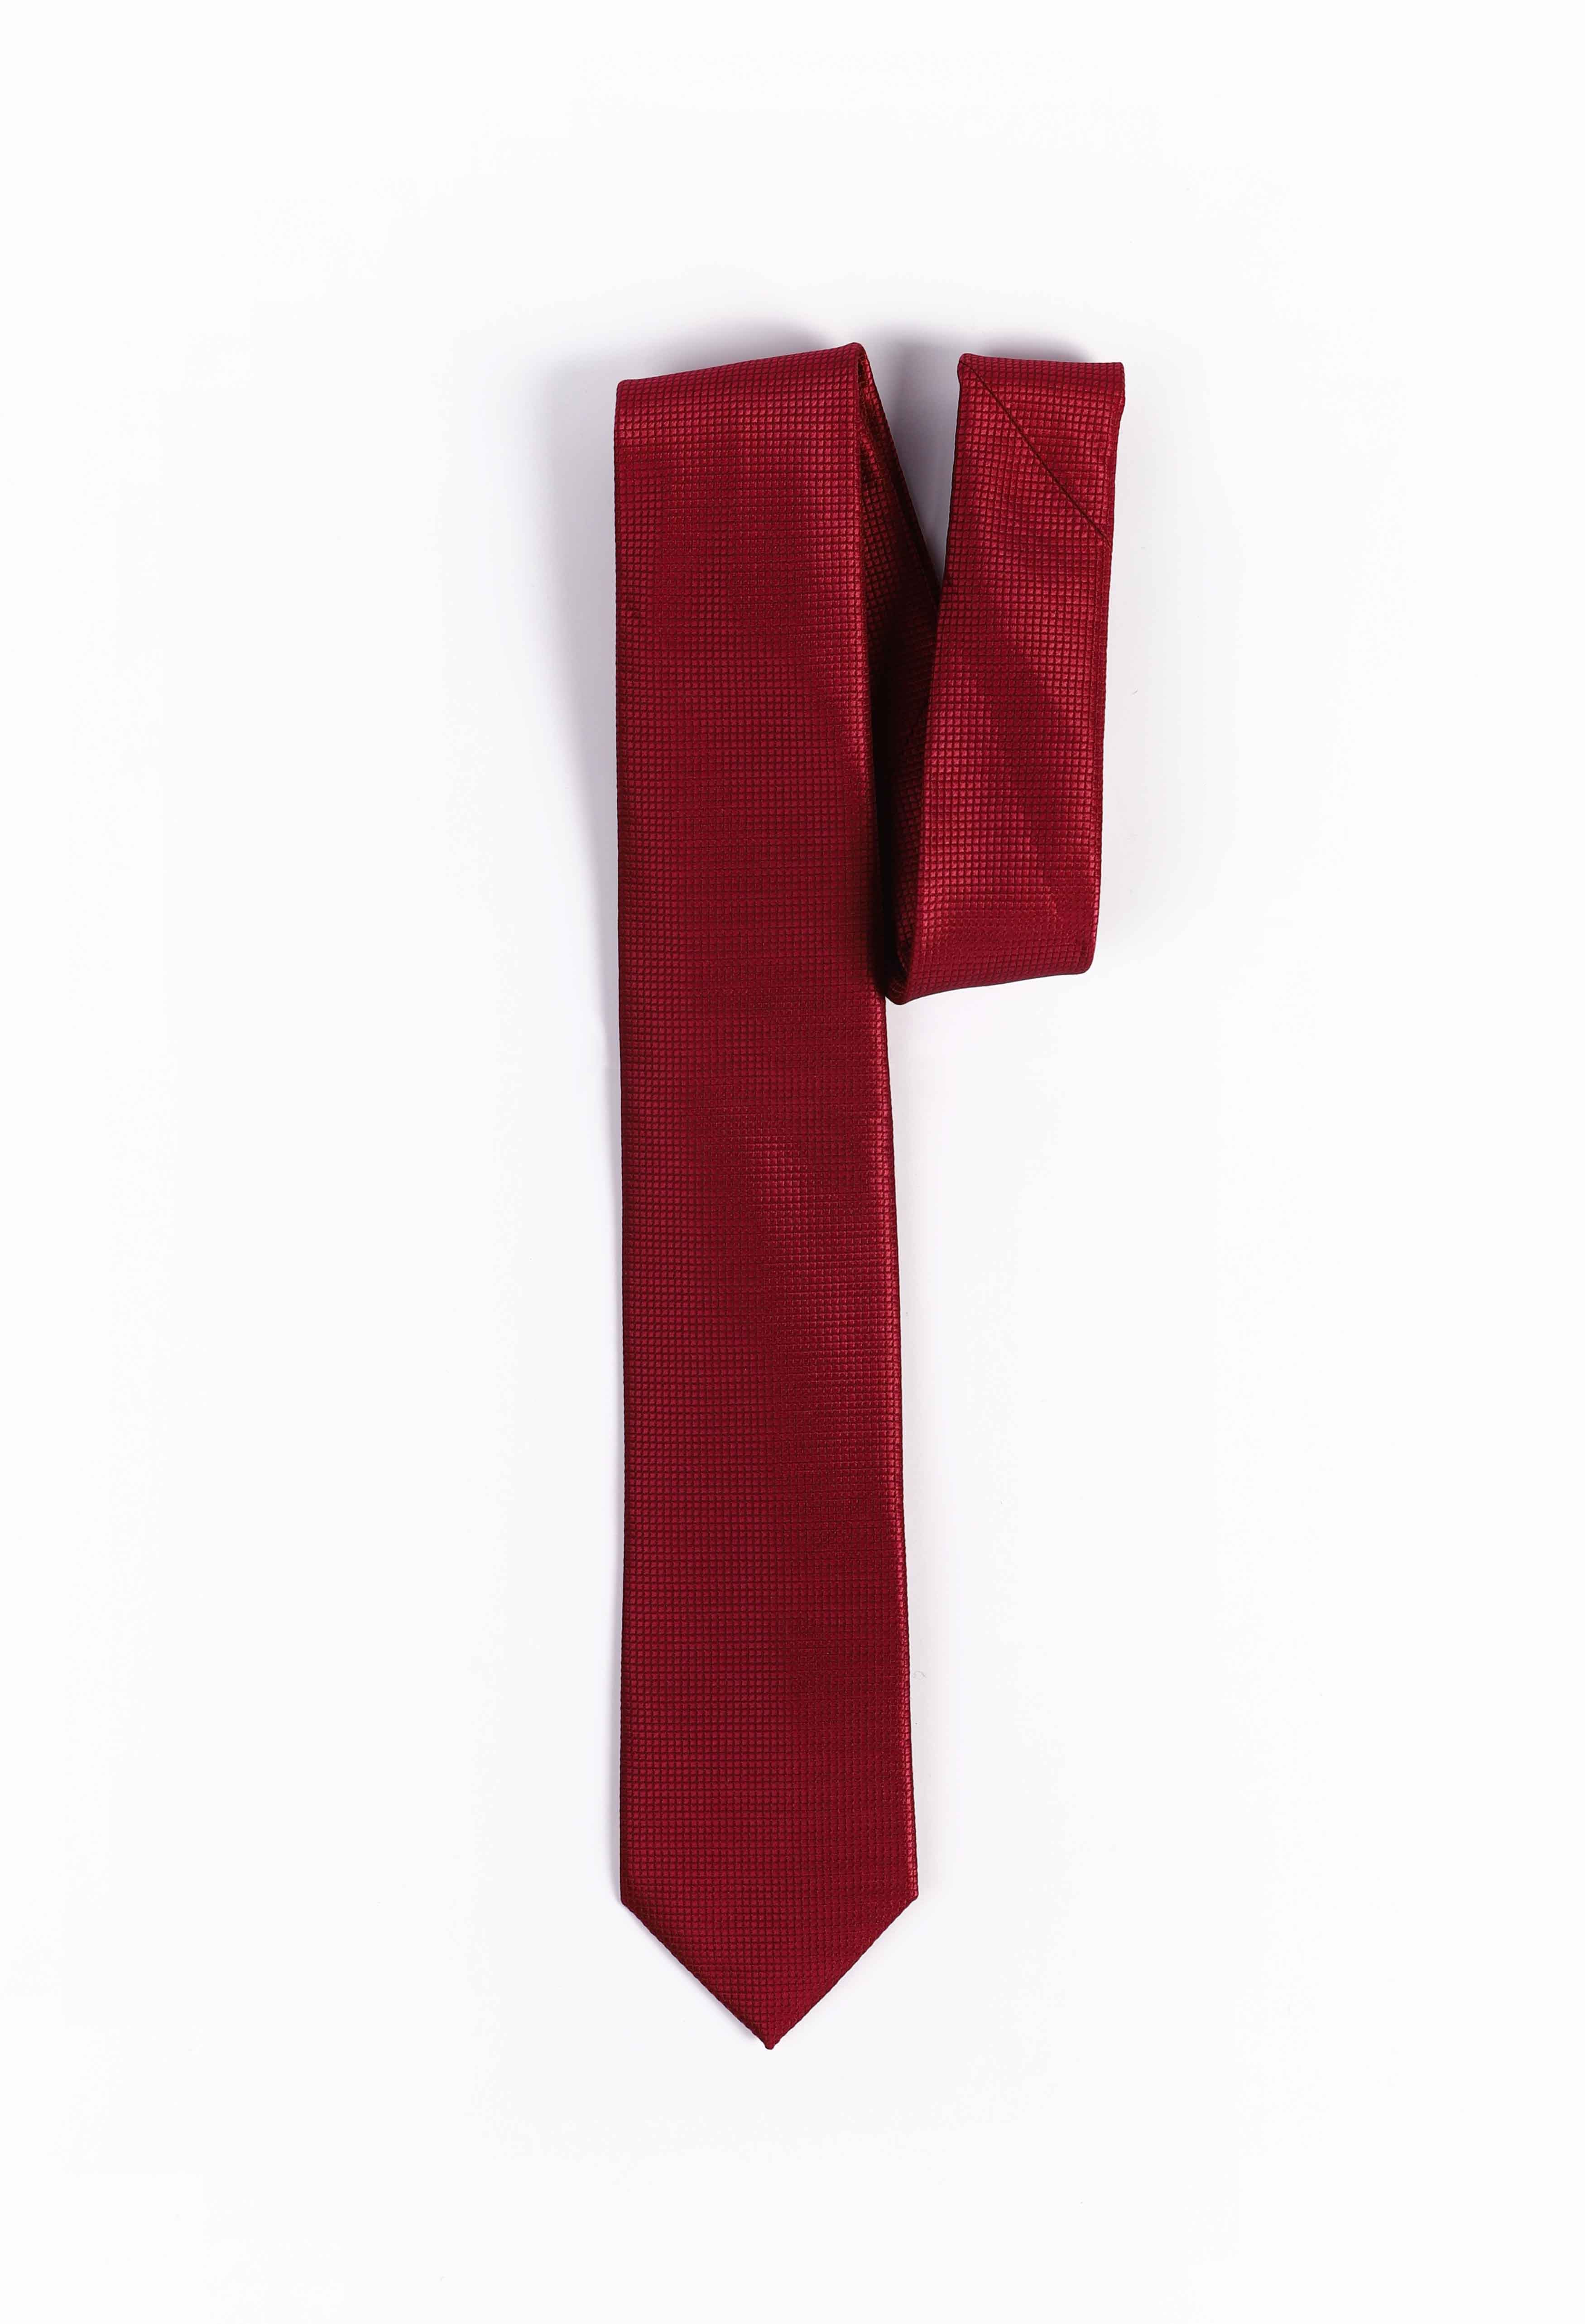 Fire Brick Red Plain Tie (TIE-000025)